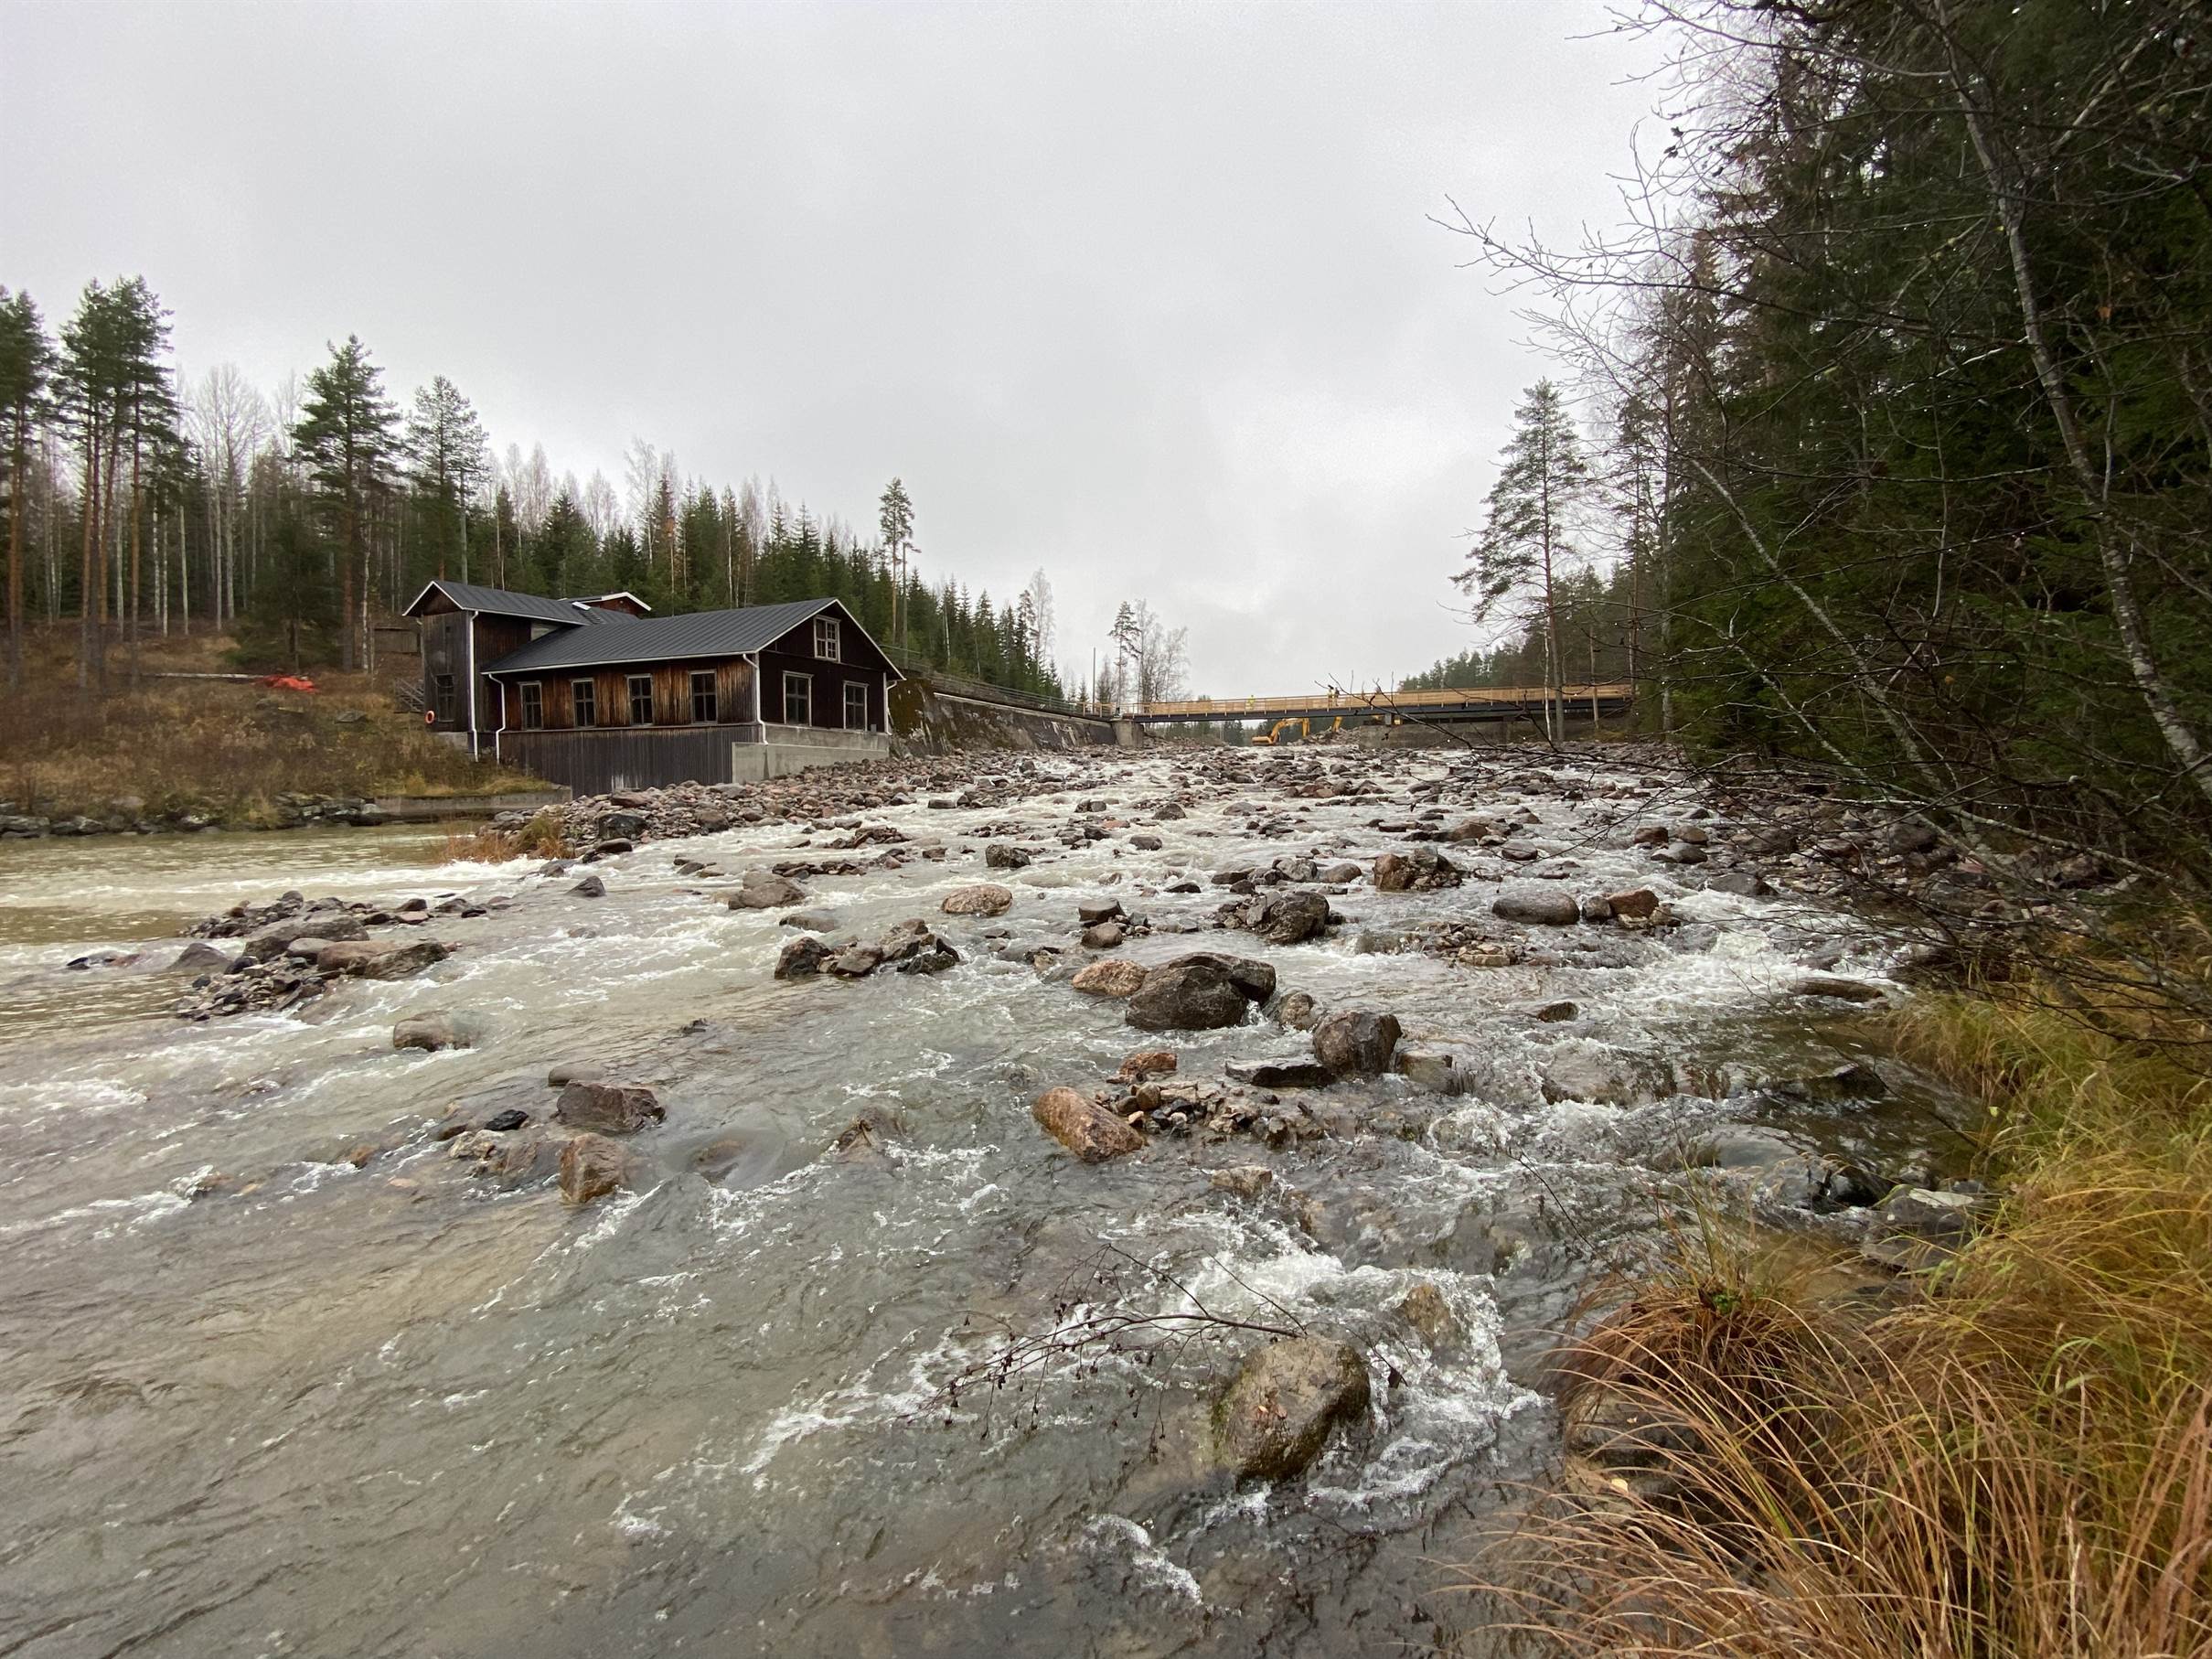 Celebrating the second removal in Hiitolanjoki river